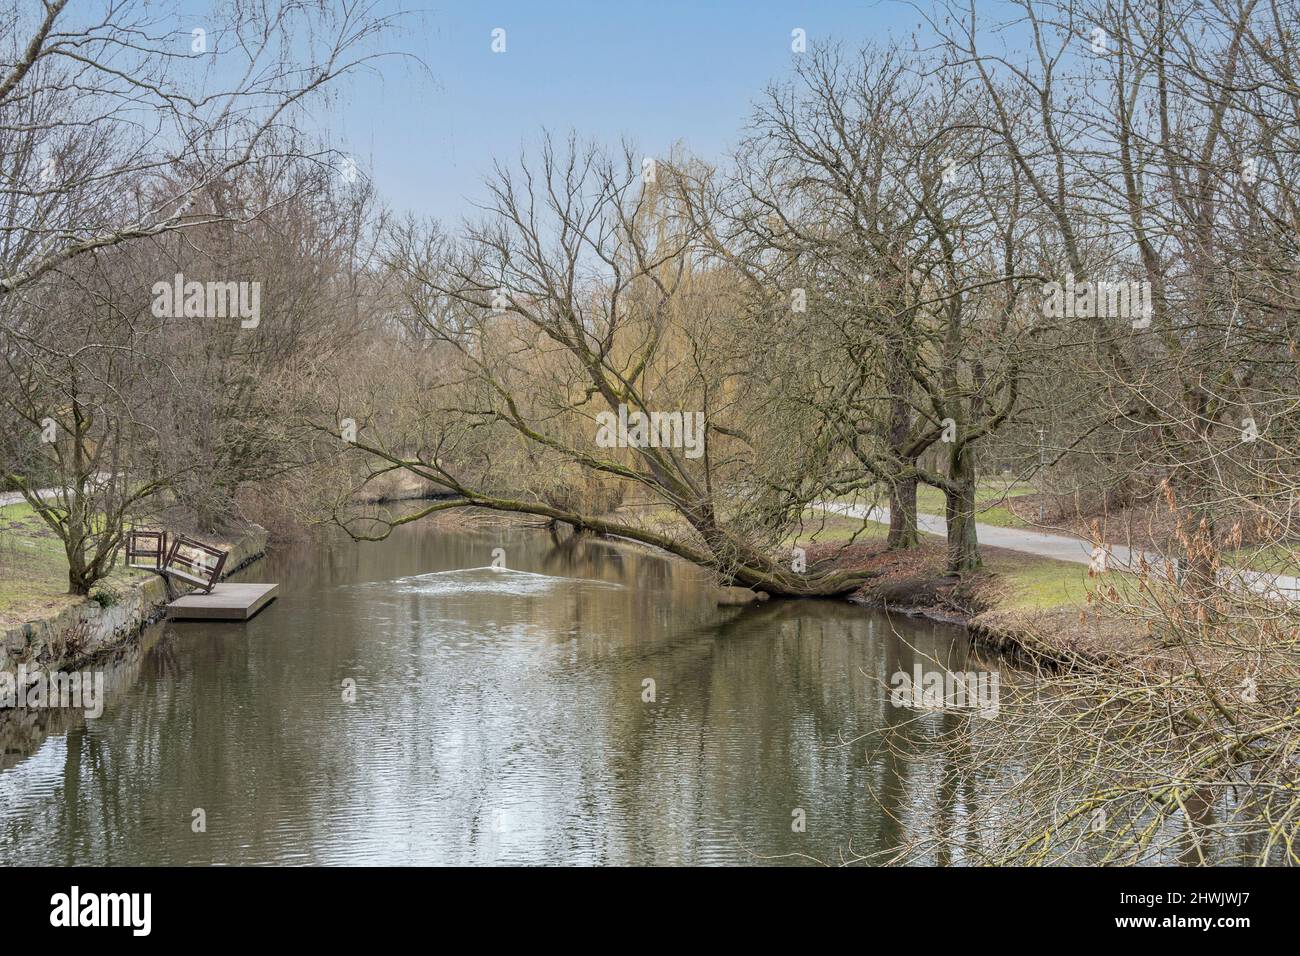 Die Oker im Braunschweiger Bürgerpark, die Uferseiten sind von alten Bäumen gesäumt , Grünstreifen verlaufen neben dem Fluss. Auch ein Bootsanleger ... Stock Photo